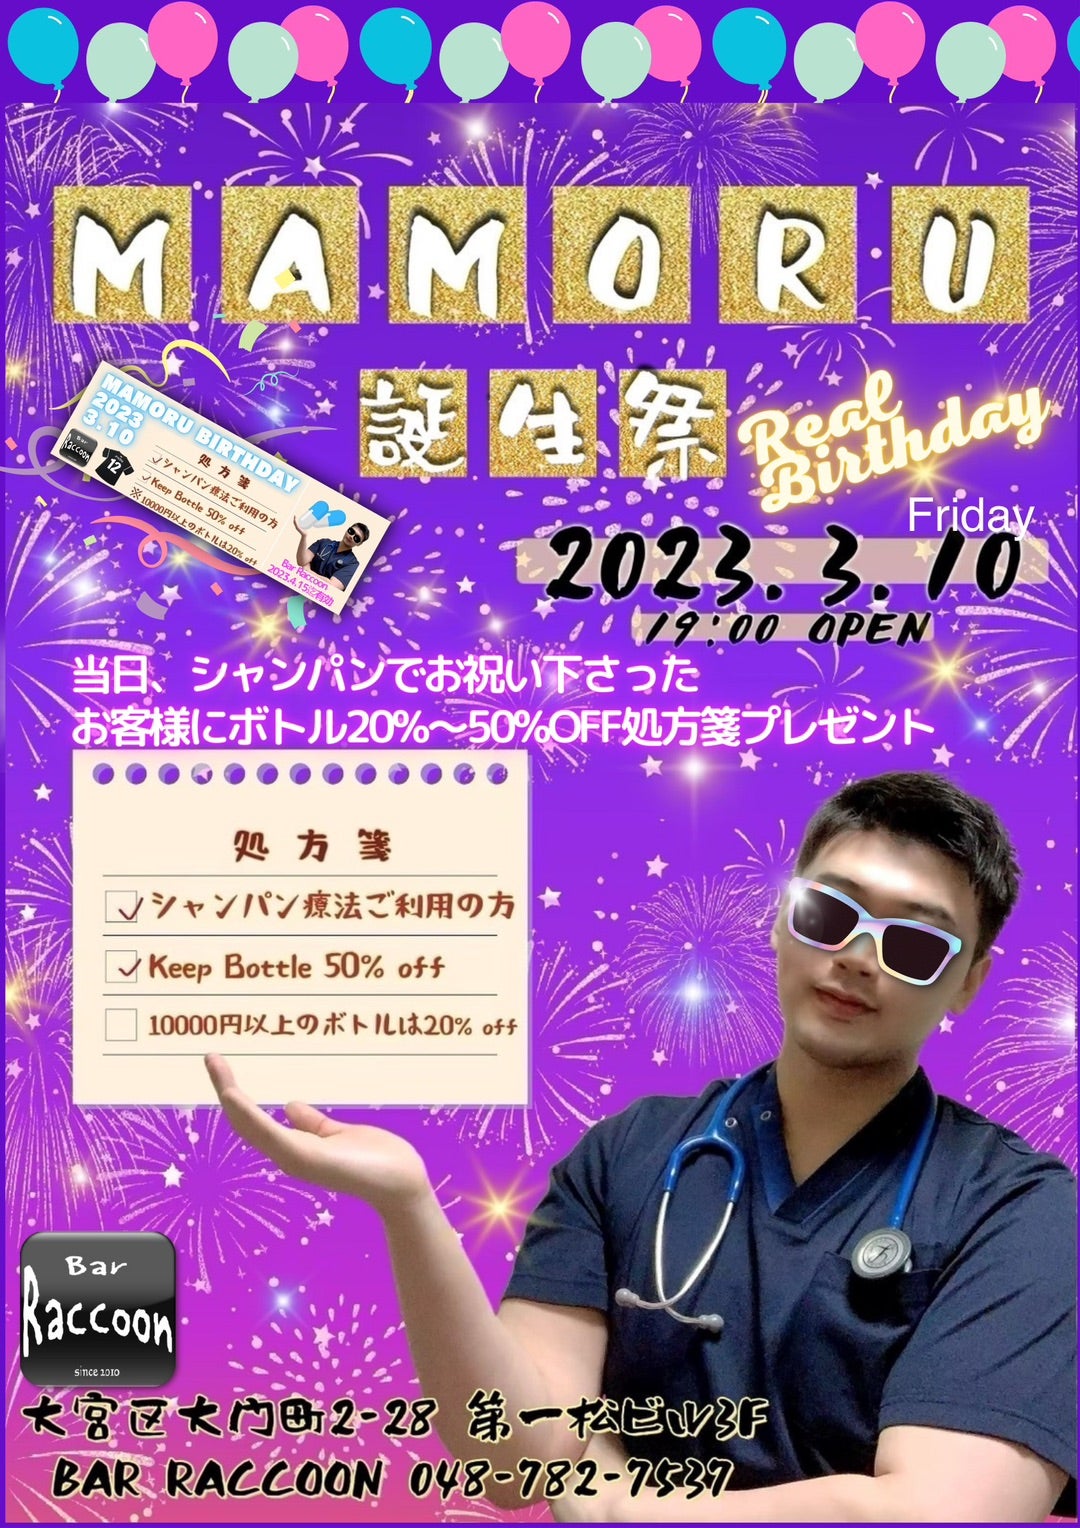 3月10日(金) MAMORU BIRTHDAY PARTY【Raccoonのブログ】